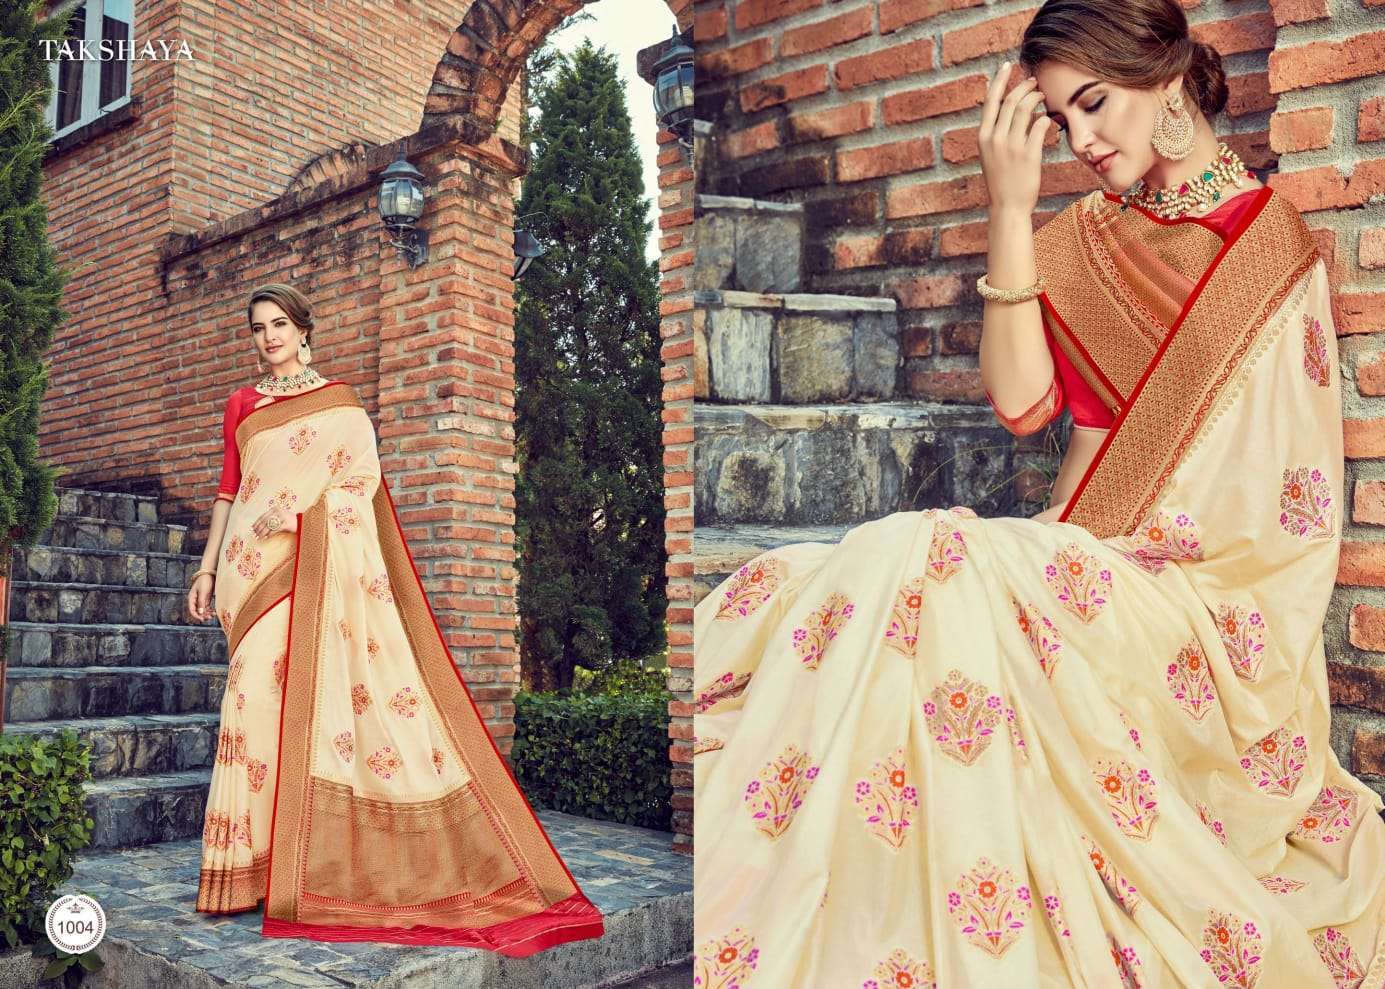 Aaloki Takhshya Silk Designer Sarees Collection 03